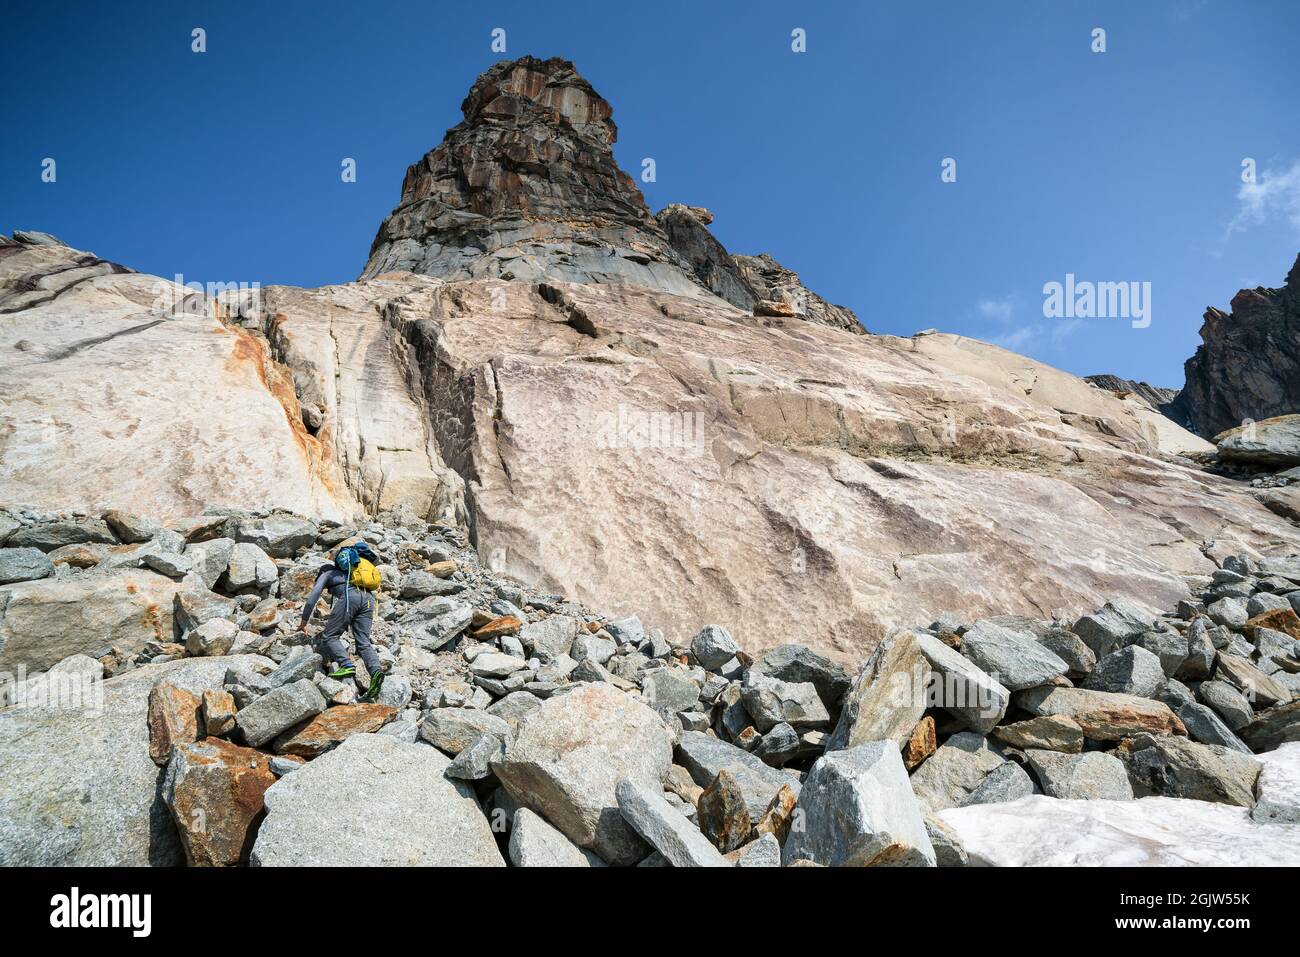 Sulla strada per l'arrampicata su roccia l'Hannibalturm nei pressi di Furkapass, Svizzera Foto Stock